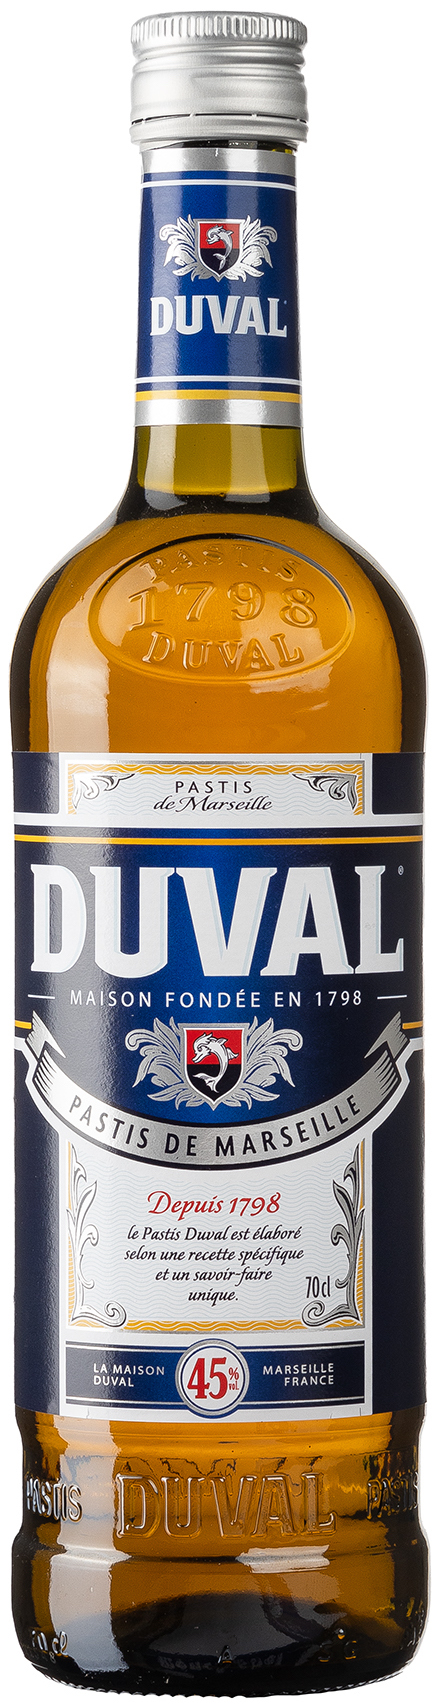 0,7L Pastis Duval vol. 45%